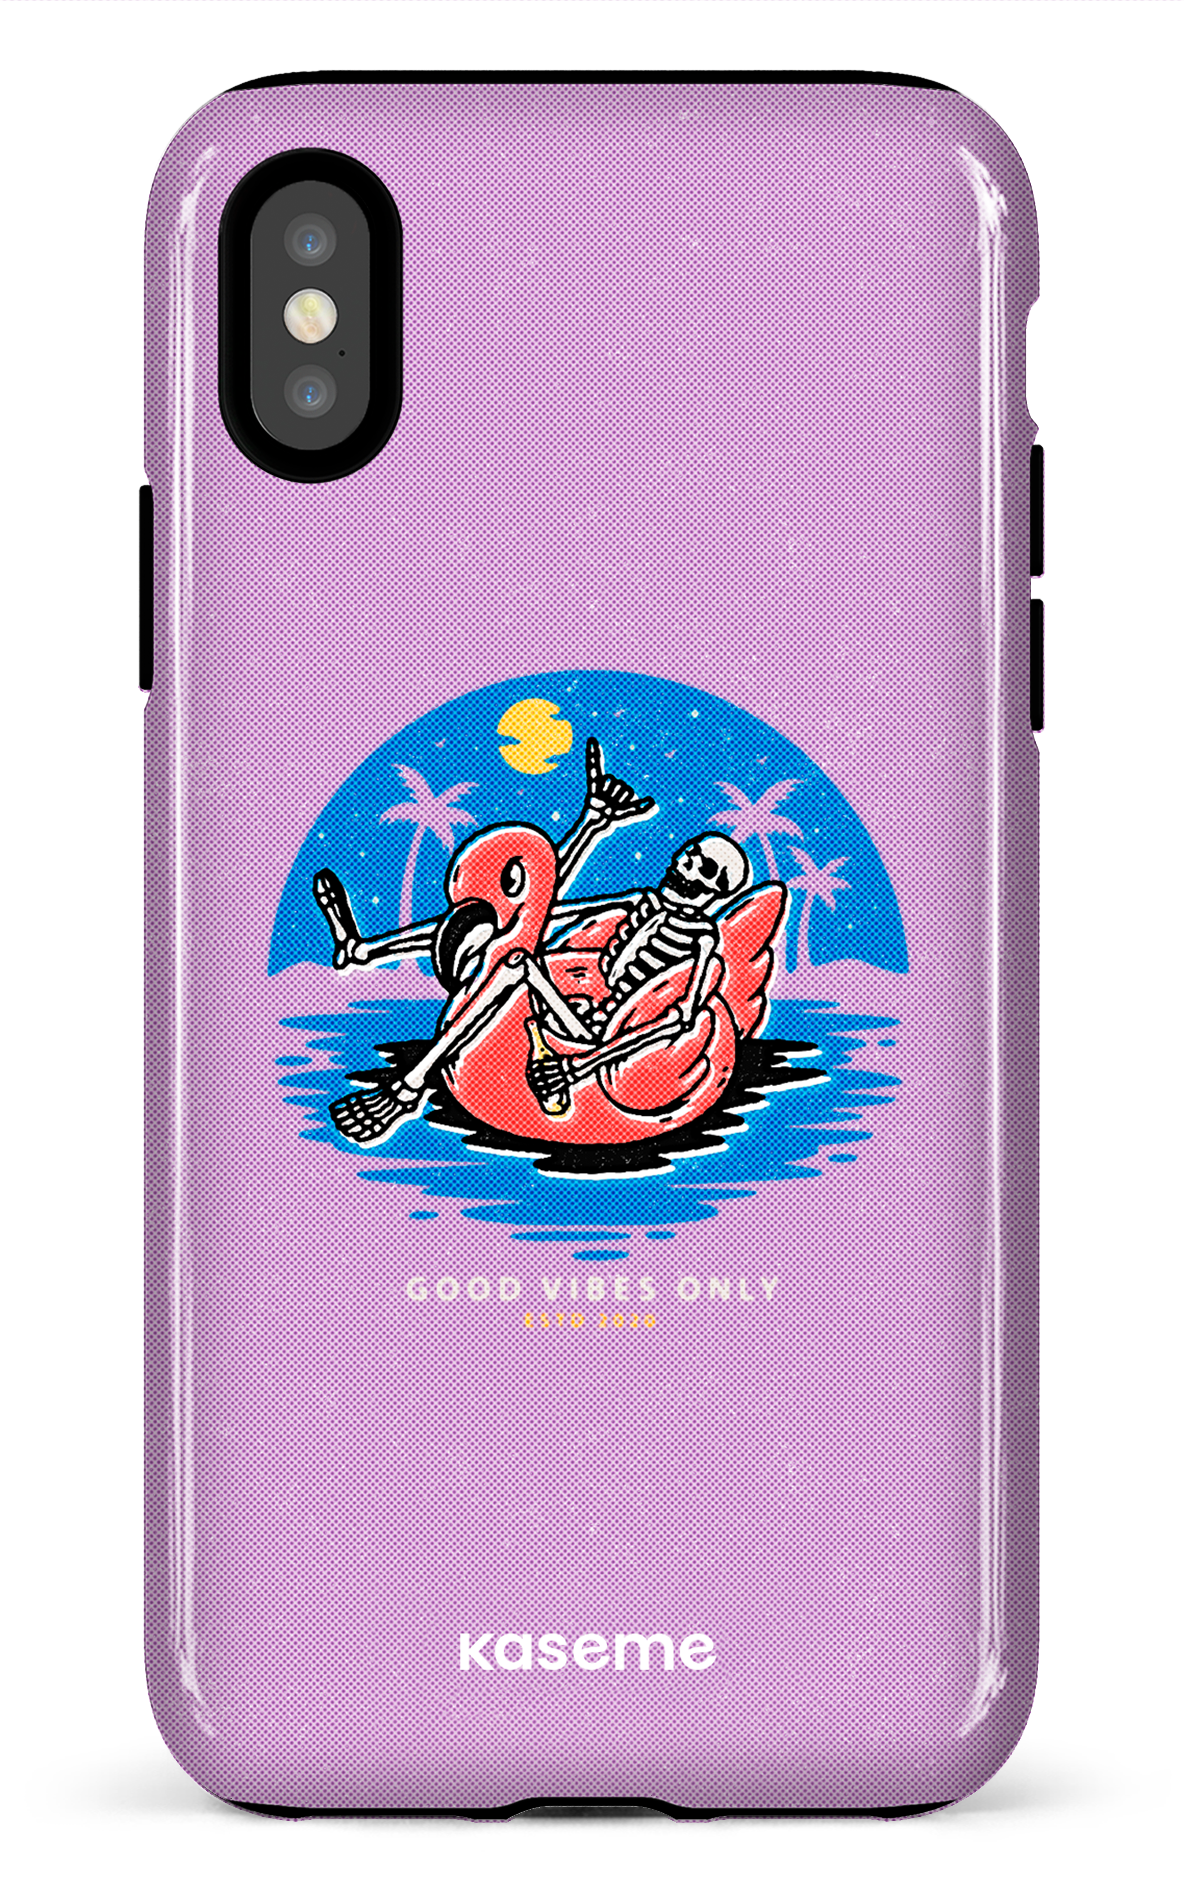 Seaside purple - iPhone X/XS